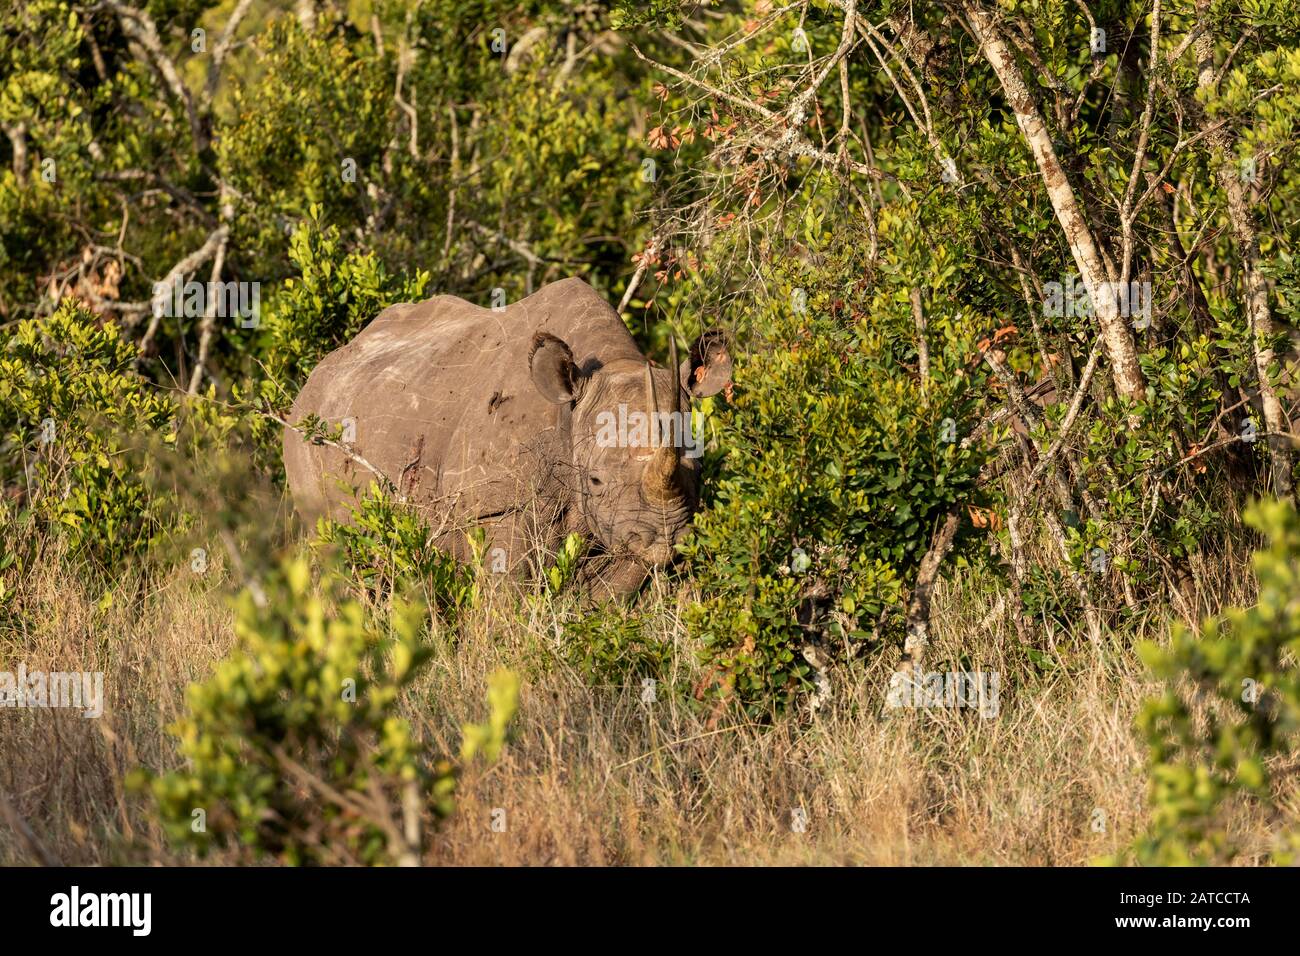 Black Rhinoceros (Diceros bicornis) mother and calf feeding in Ol Pejeta Conservancy, Kenya Stock Photo